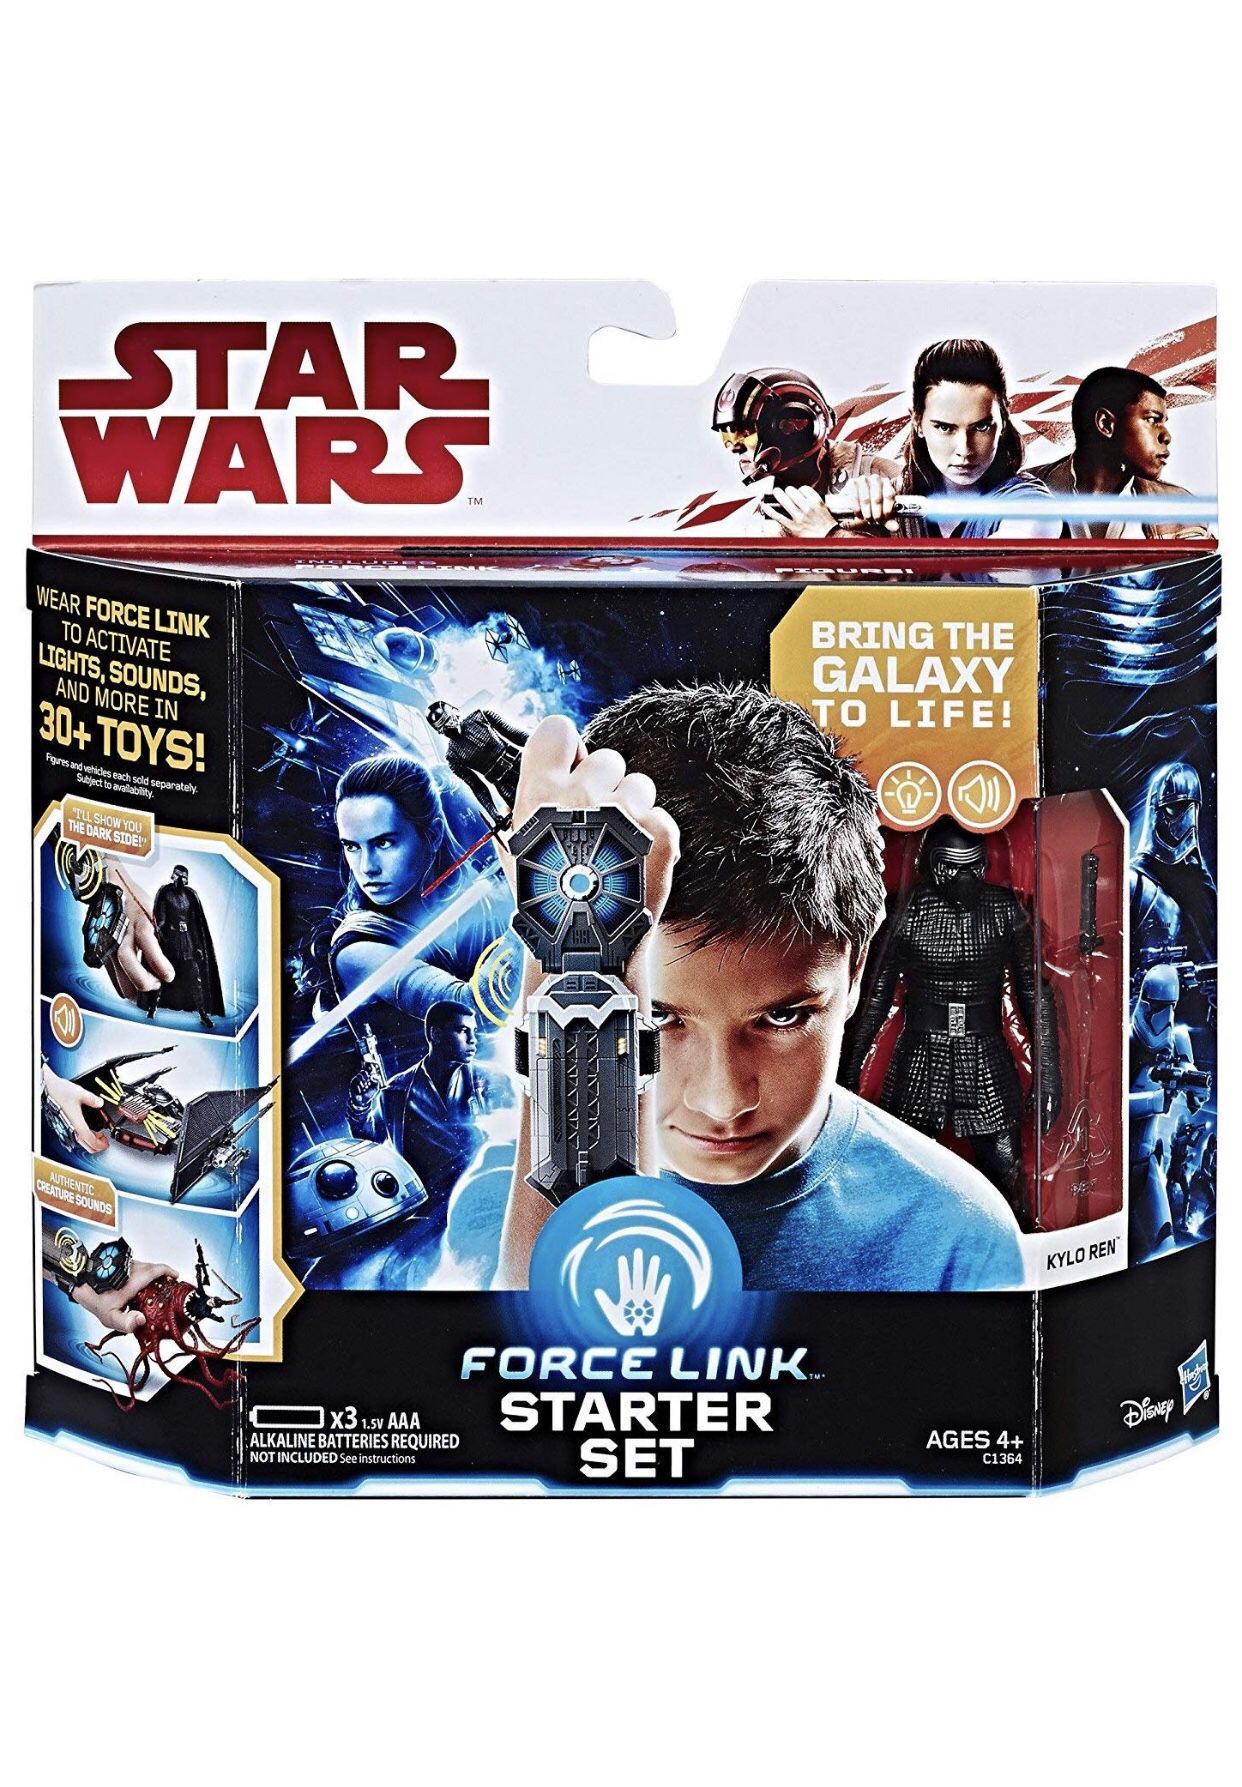 Star wars force link starter set